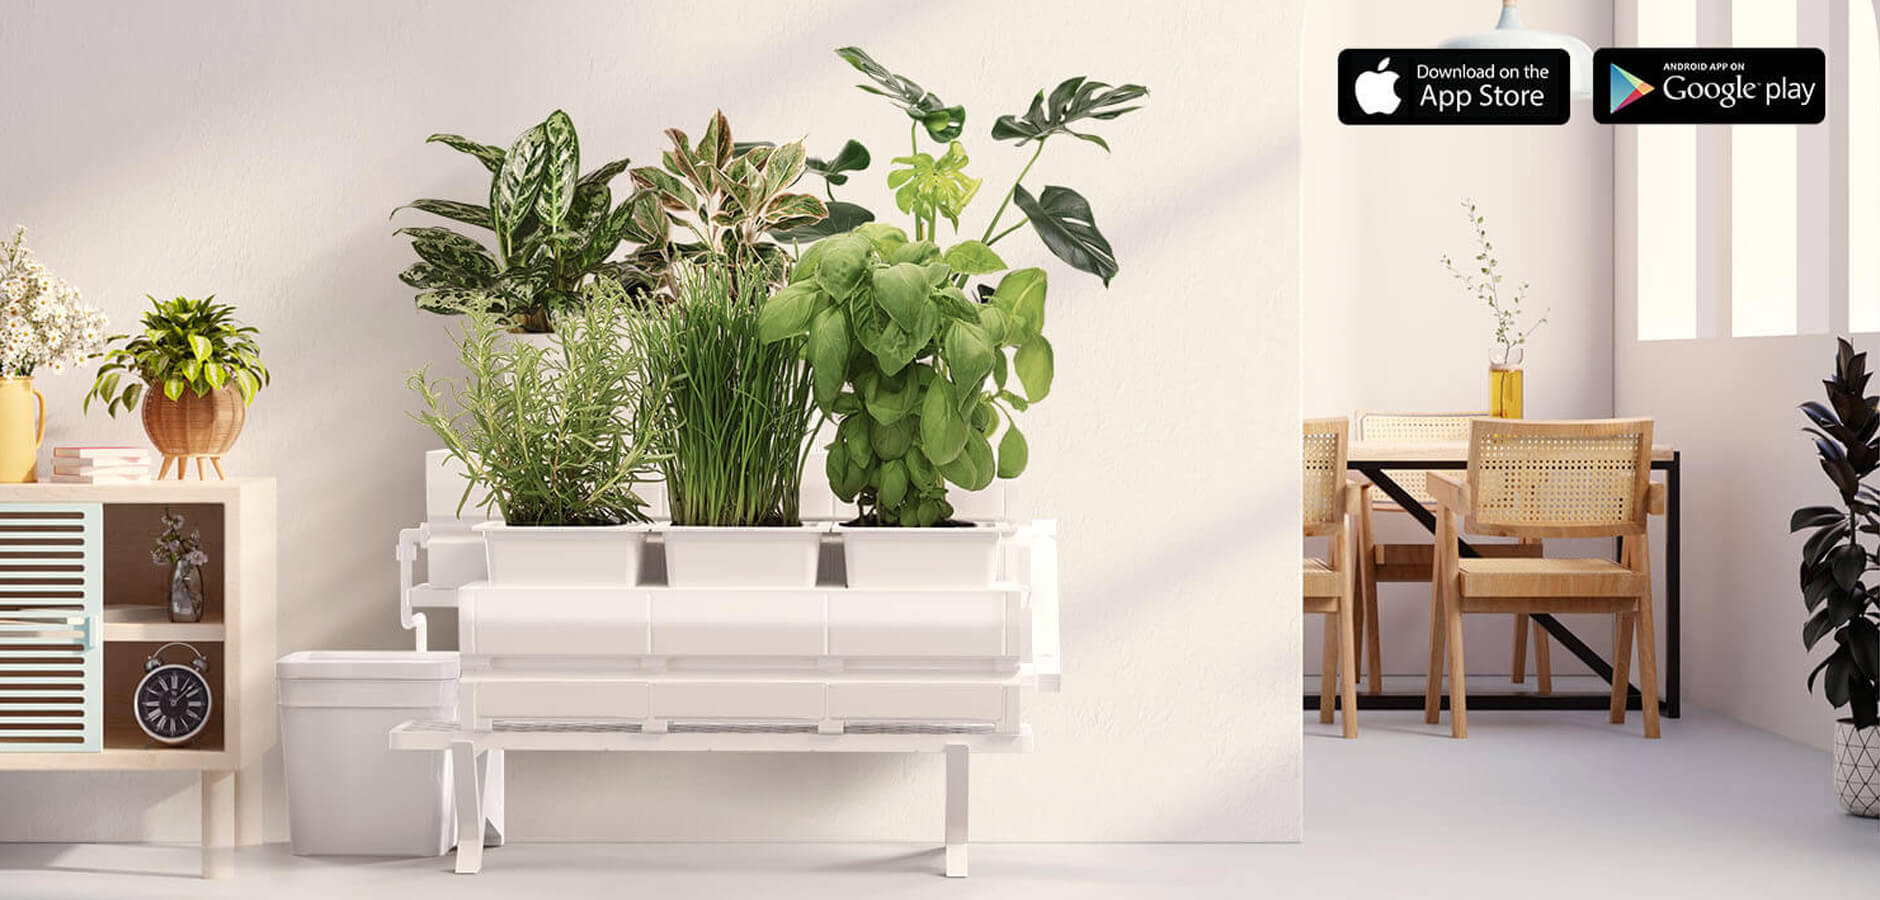 LetPot® indoor Garden, Hydroponic Smart Planter with App Control